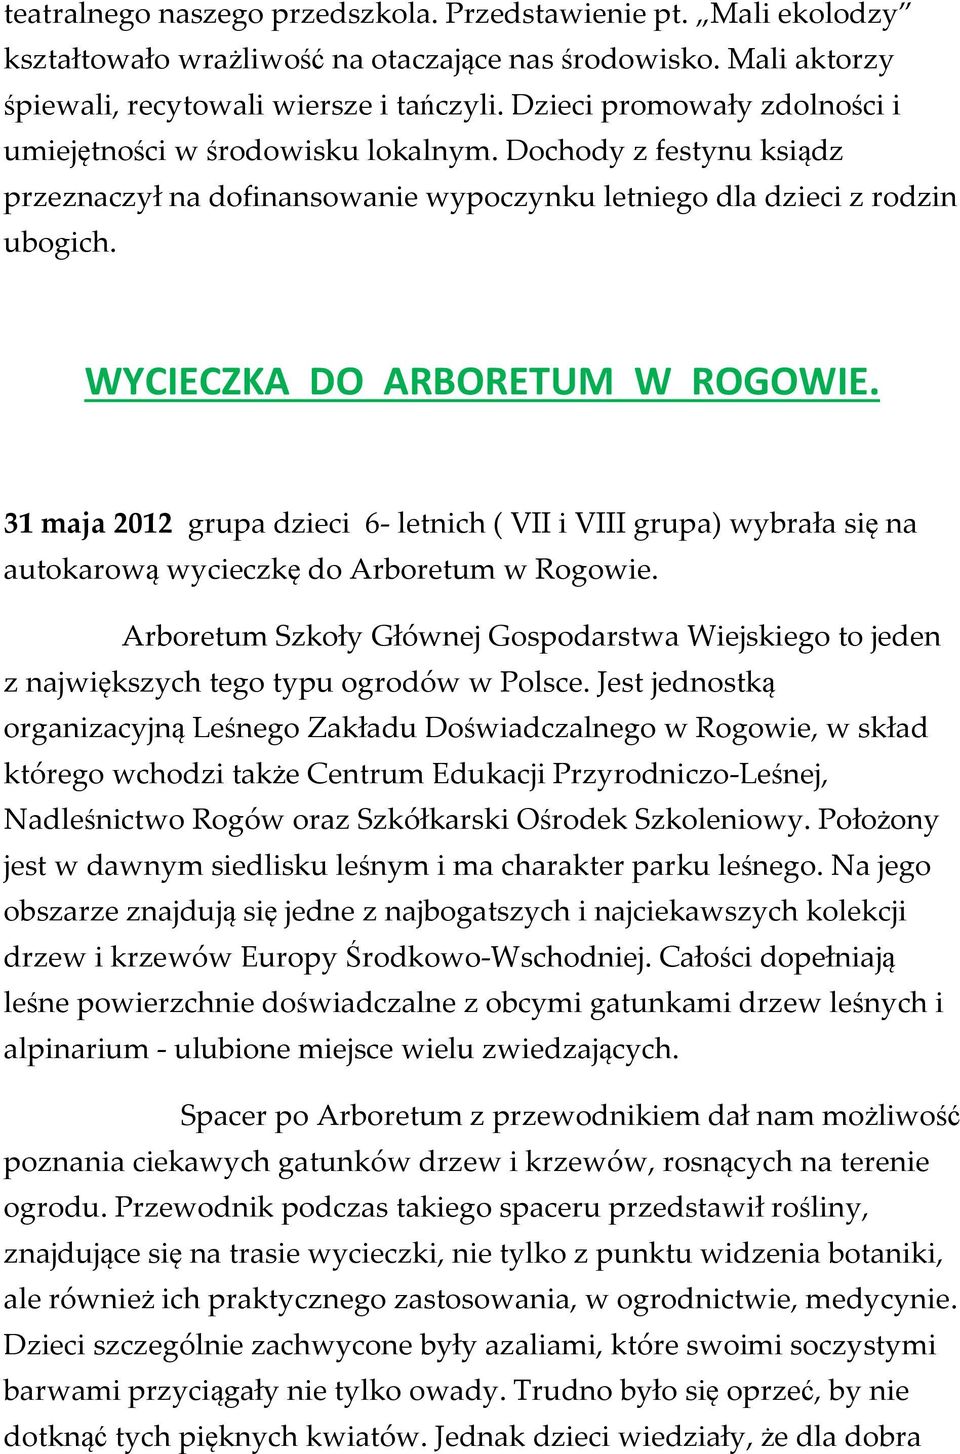 WYCIECZKA DO ARBORETUM W ROGOWIE. 31 maja 2012 grupa dzieci 6- letnich ( VII i VIII grupa) wybrała się na autokarową wycieczkę do Arboretum w Rogowie.